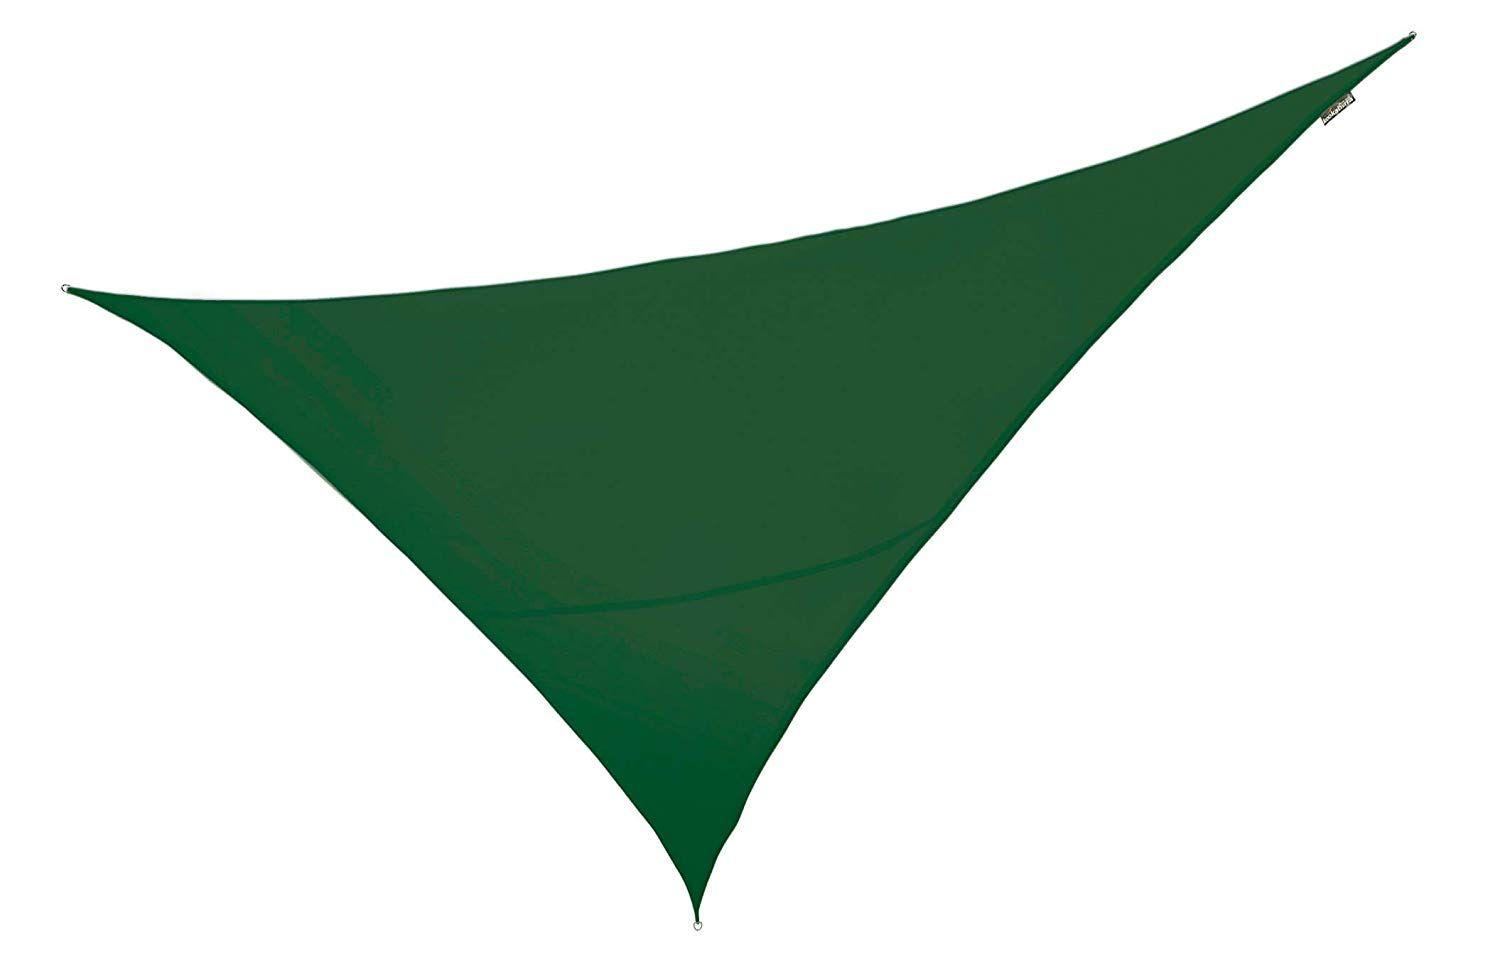 Triangle with Green M Logo - Kookaburra Waterproof Garden Sun Shade Sail Canopy in Green 98% UV